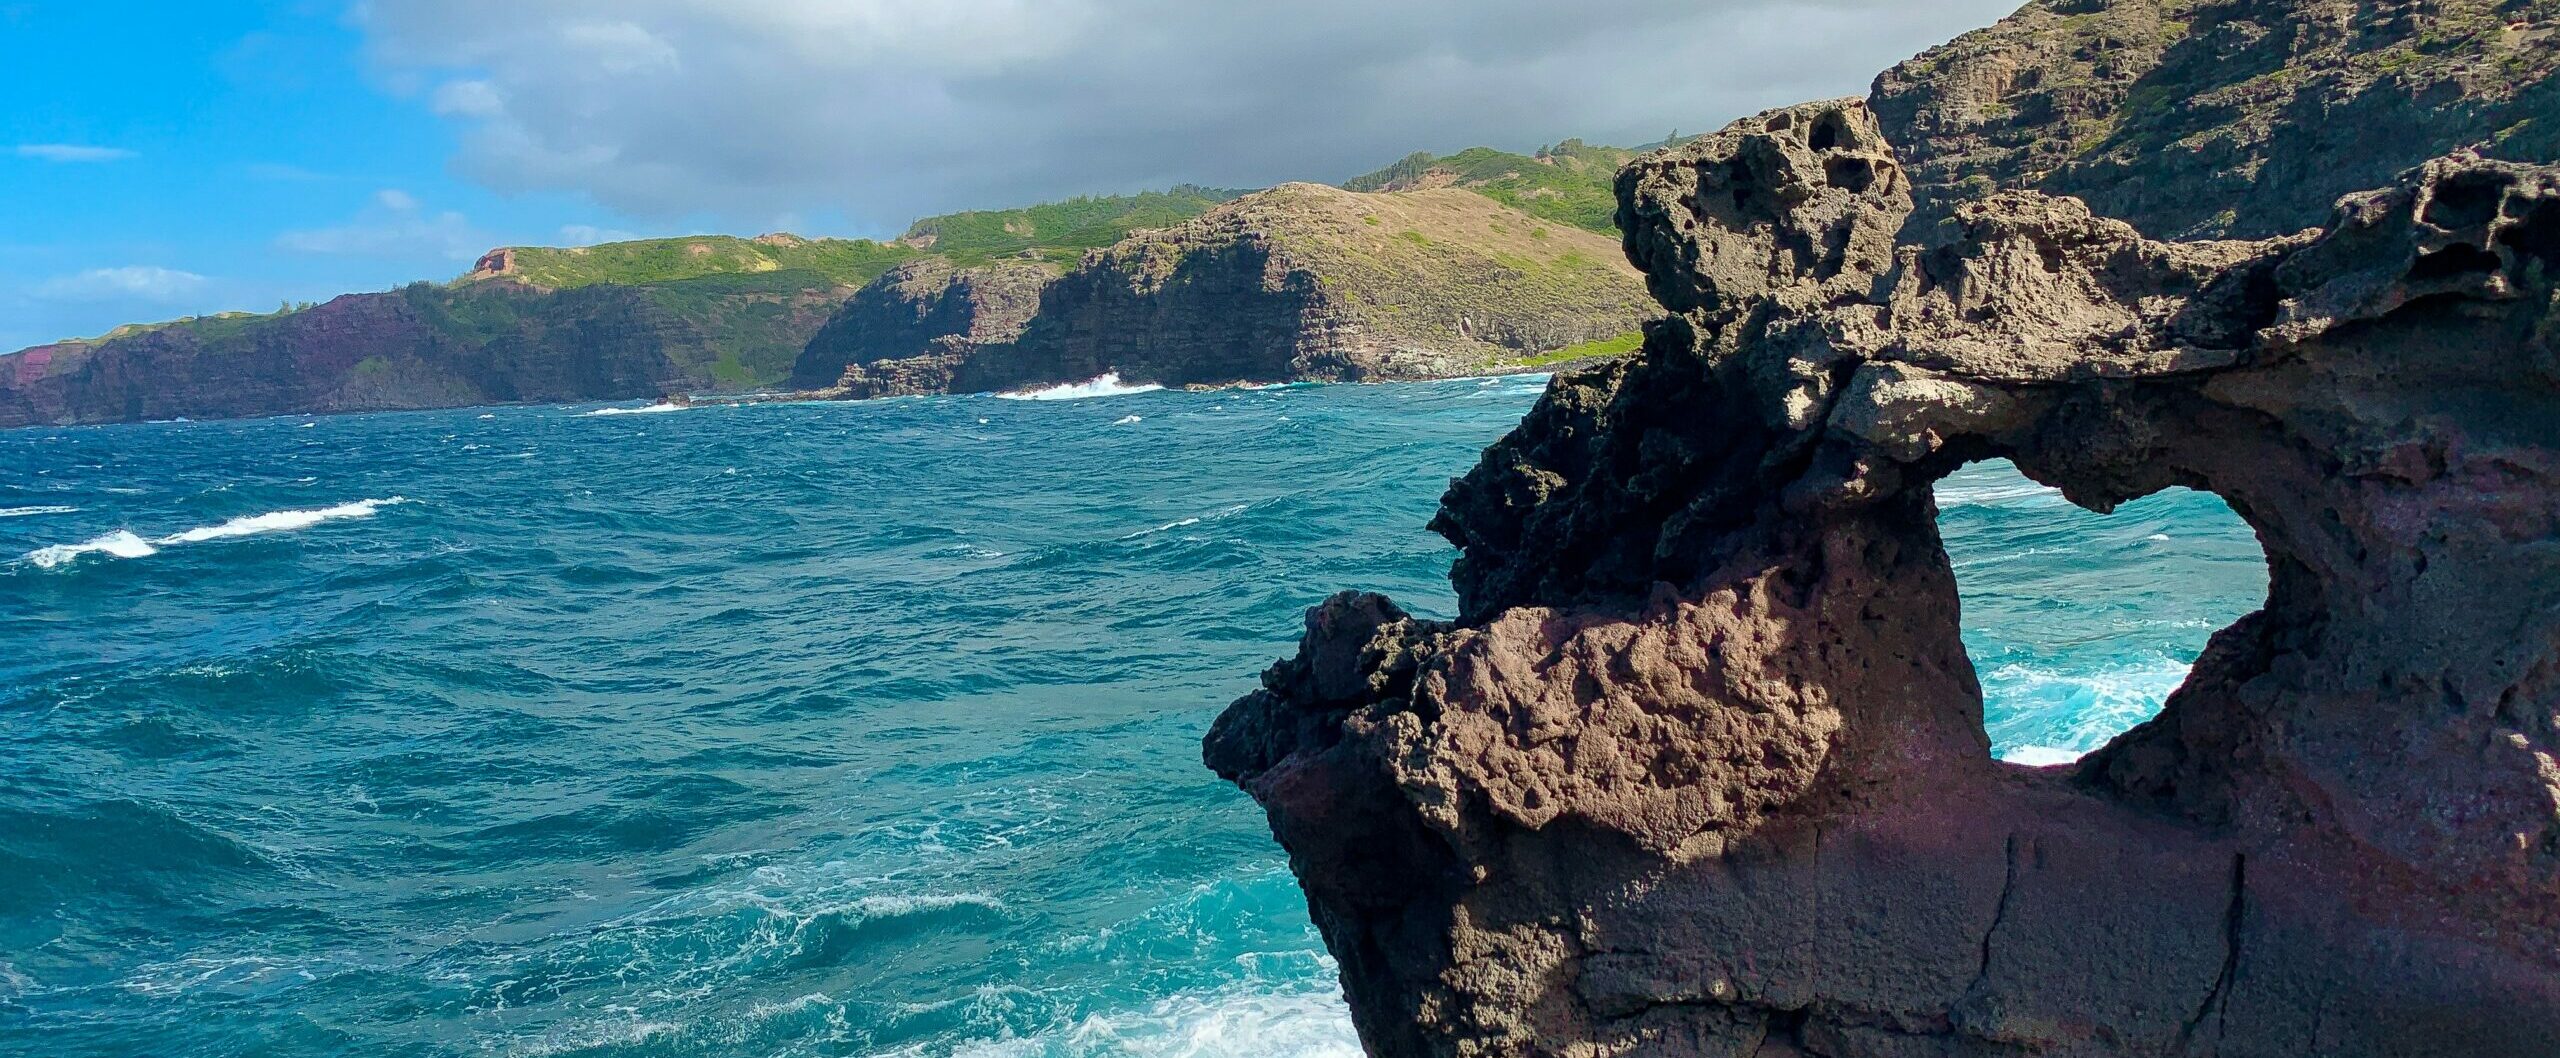 Heart-shaped rock formation near the Nakalele Blowhole, on the northwest coast of Maui, Hawaii.